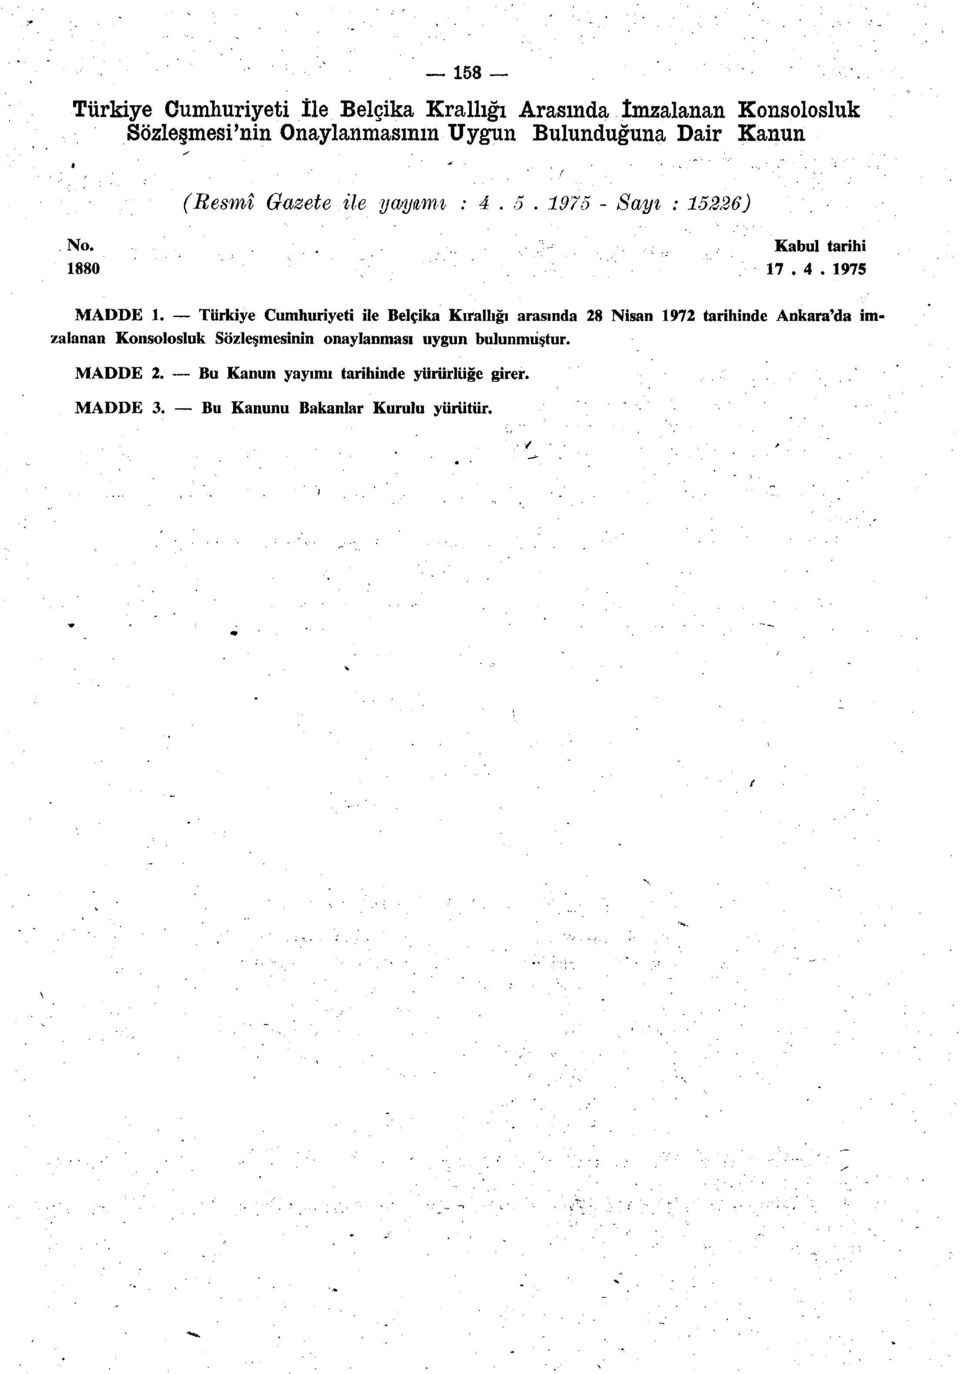 Türkiye Cumhuriyeti ile Belçika Kıratlığı arasında 28 Nisan 1972 tarihinde Ankara'da imzalanan Konsolosluk